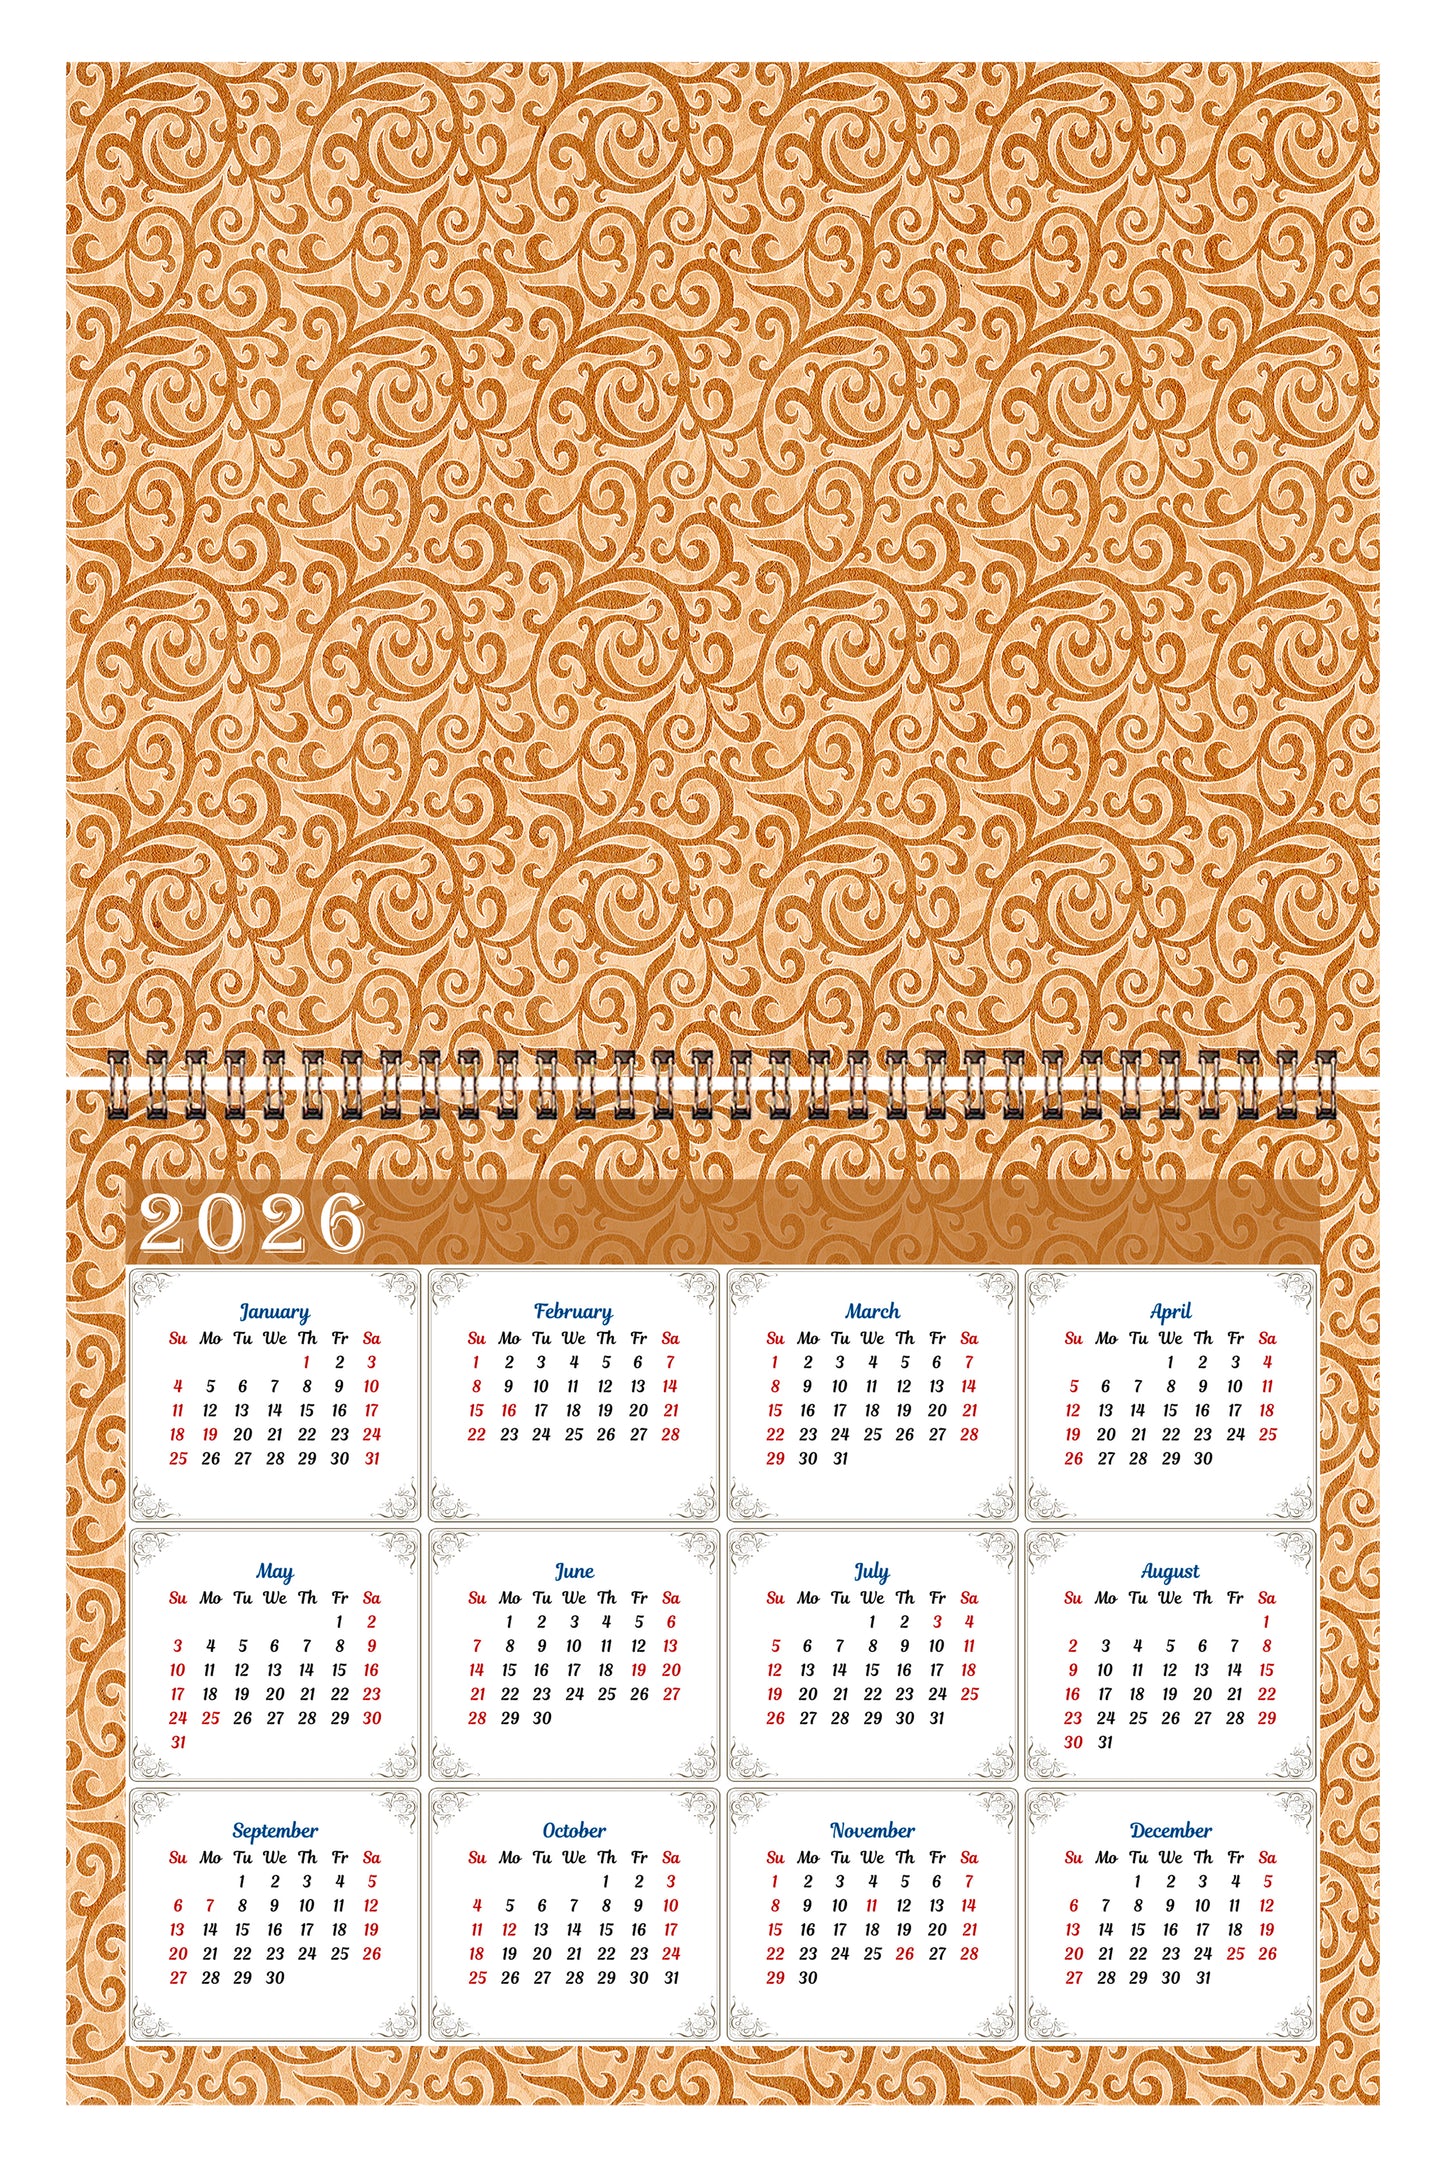 2025 Scrapbook Wall Calendar Spiral-bound (Add Your Own Photos) - 12 Months Desktop #09